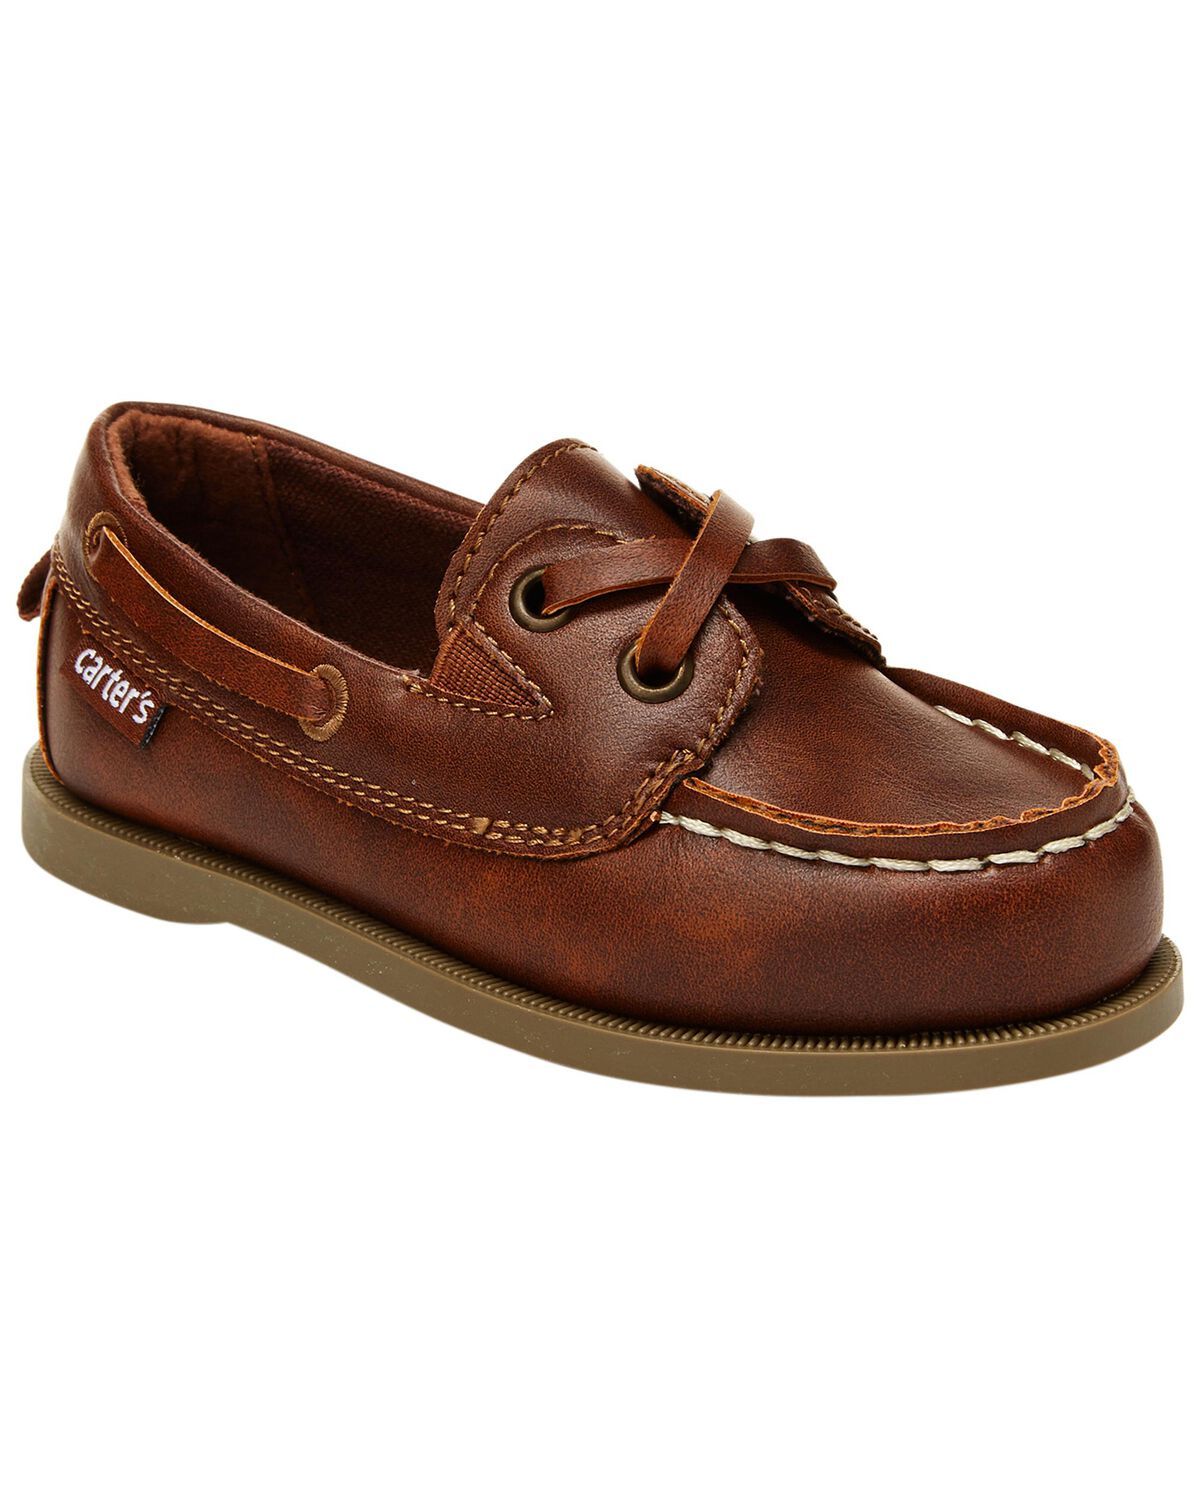 Toddler Loafer Boat Shoes | Carter's